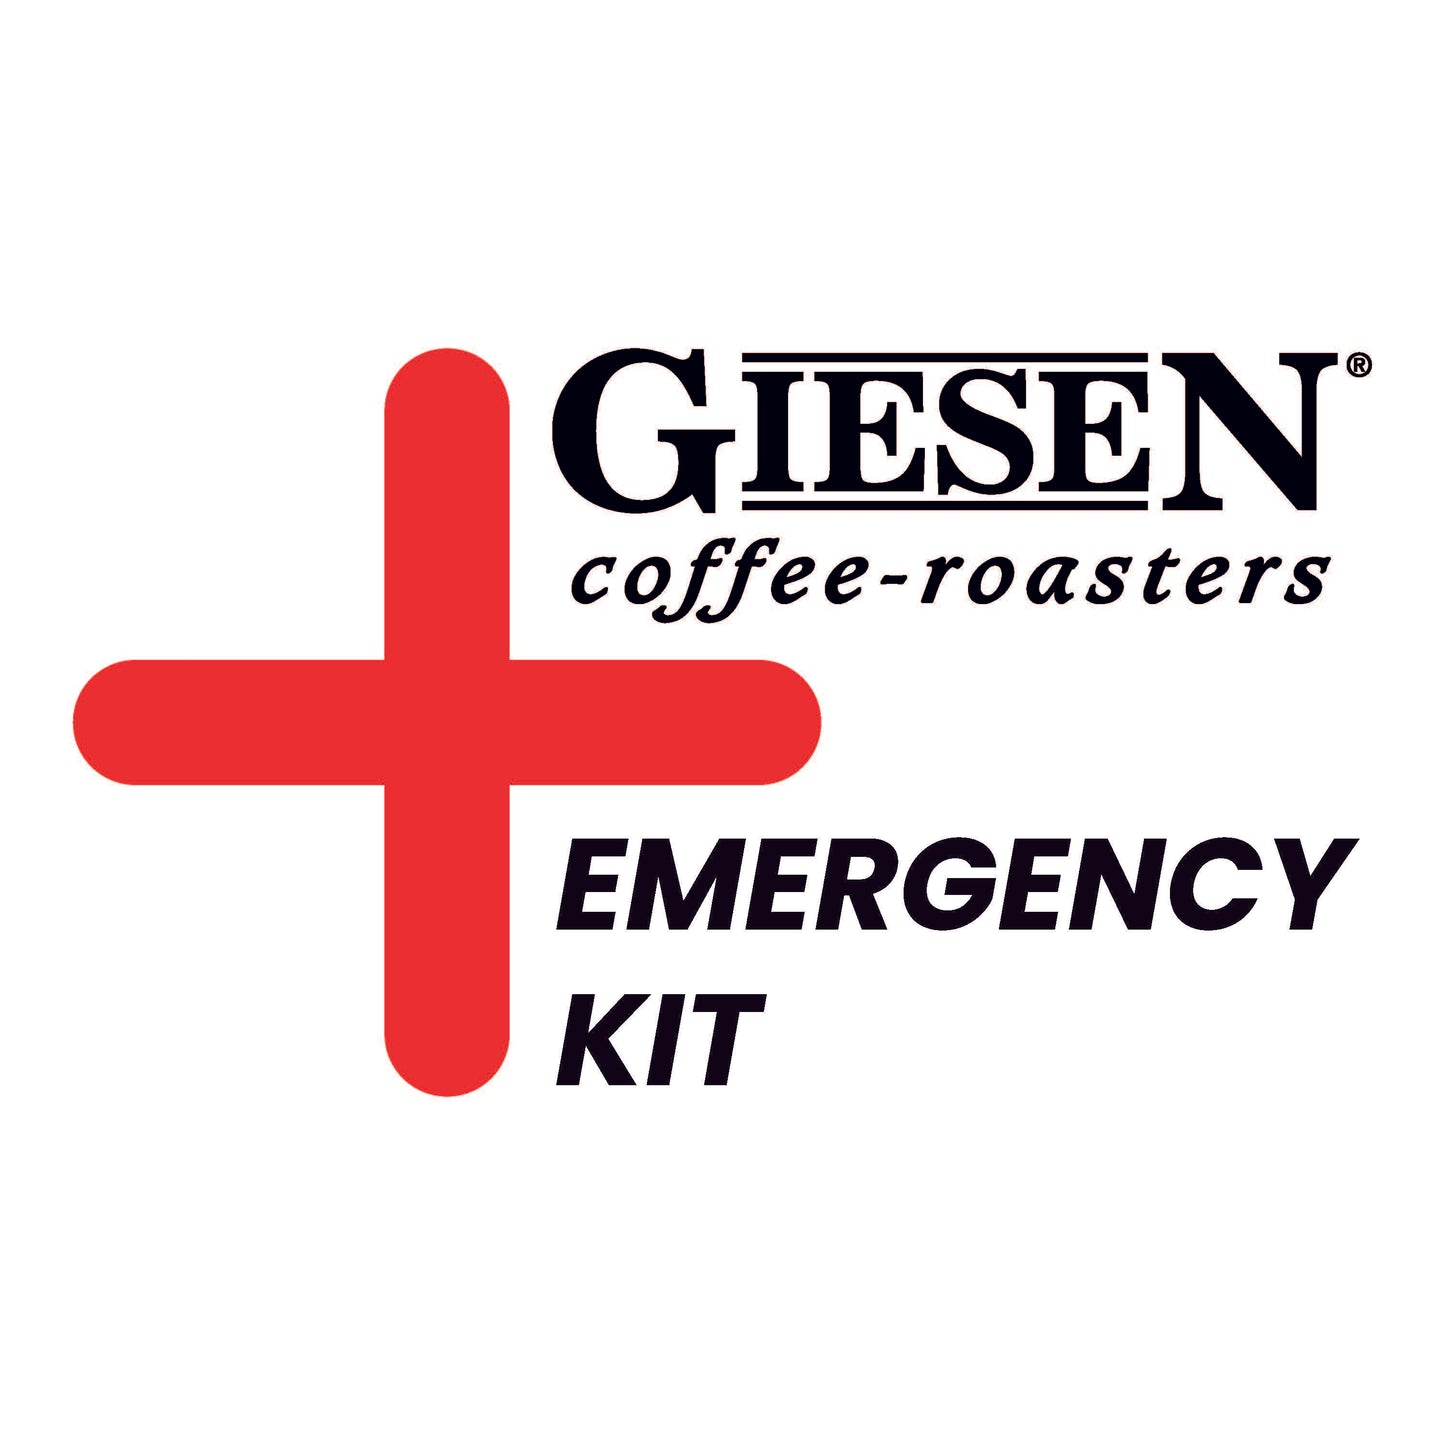 Emergency kit - W60A series / CE version